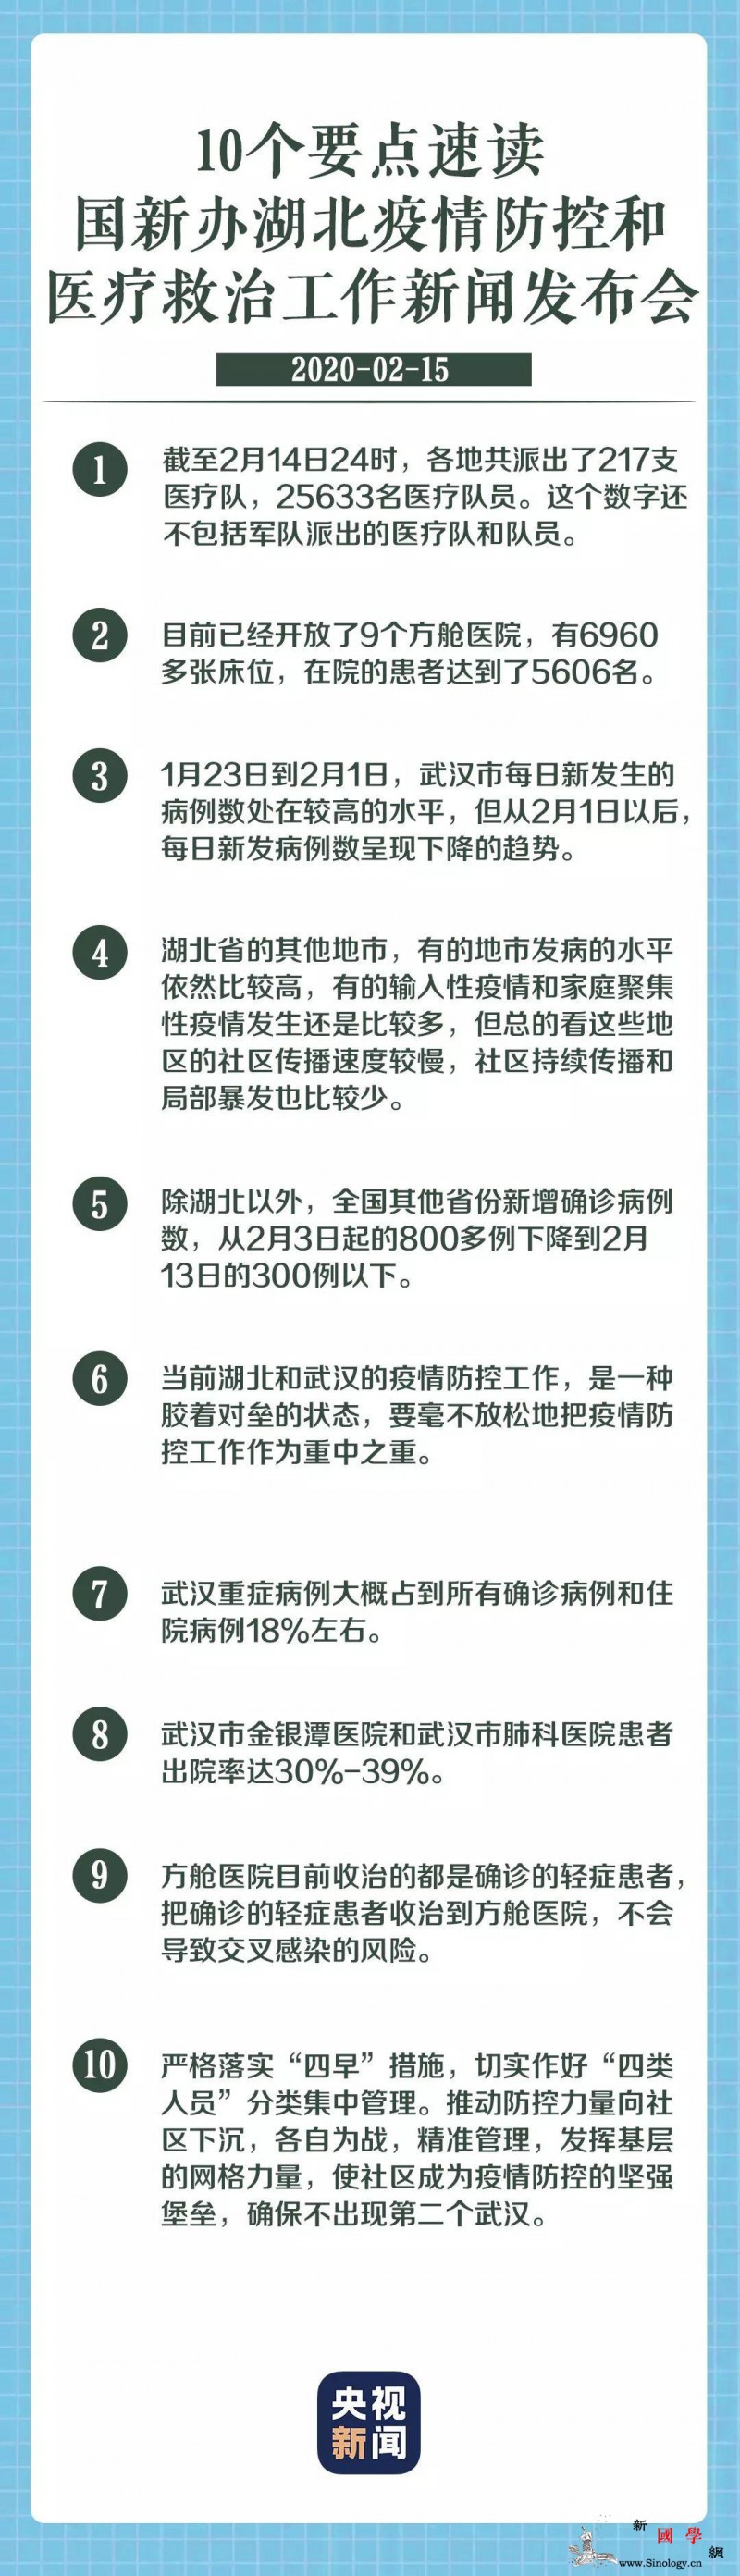 国新办发布会移到武汉举行信息量很大_例数-医疗队-湖北-